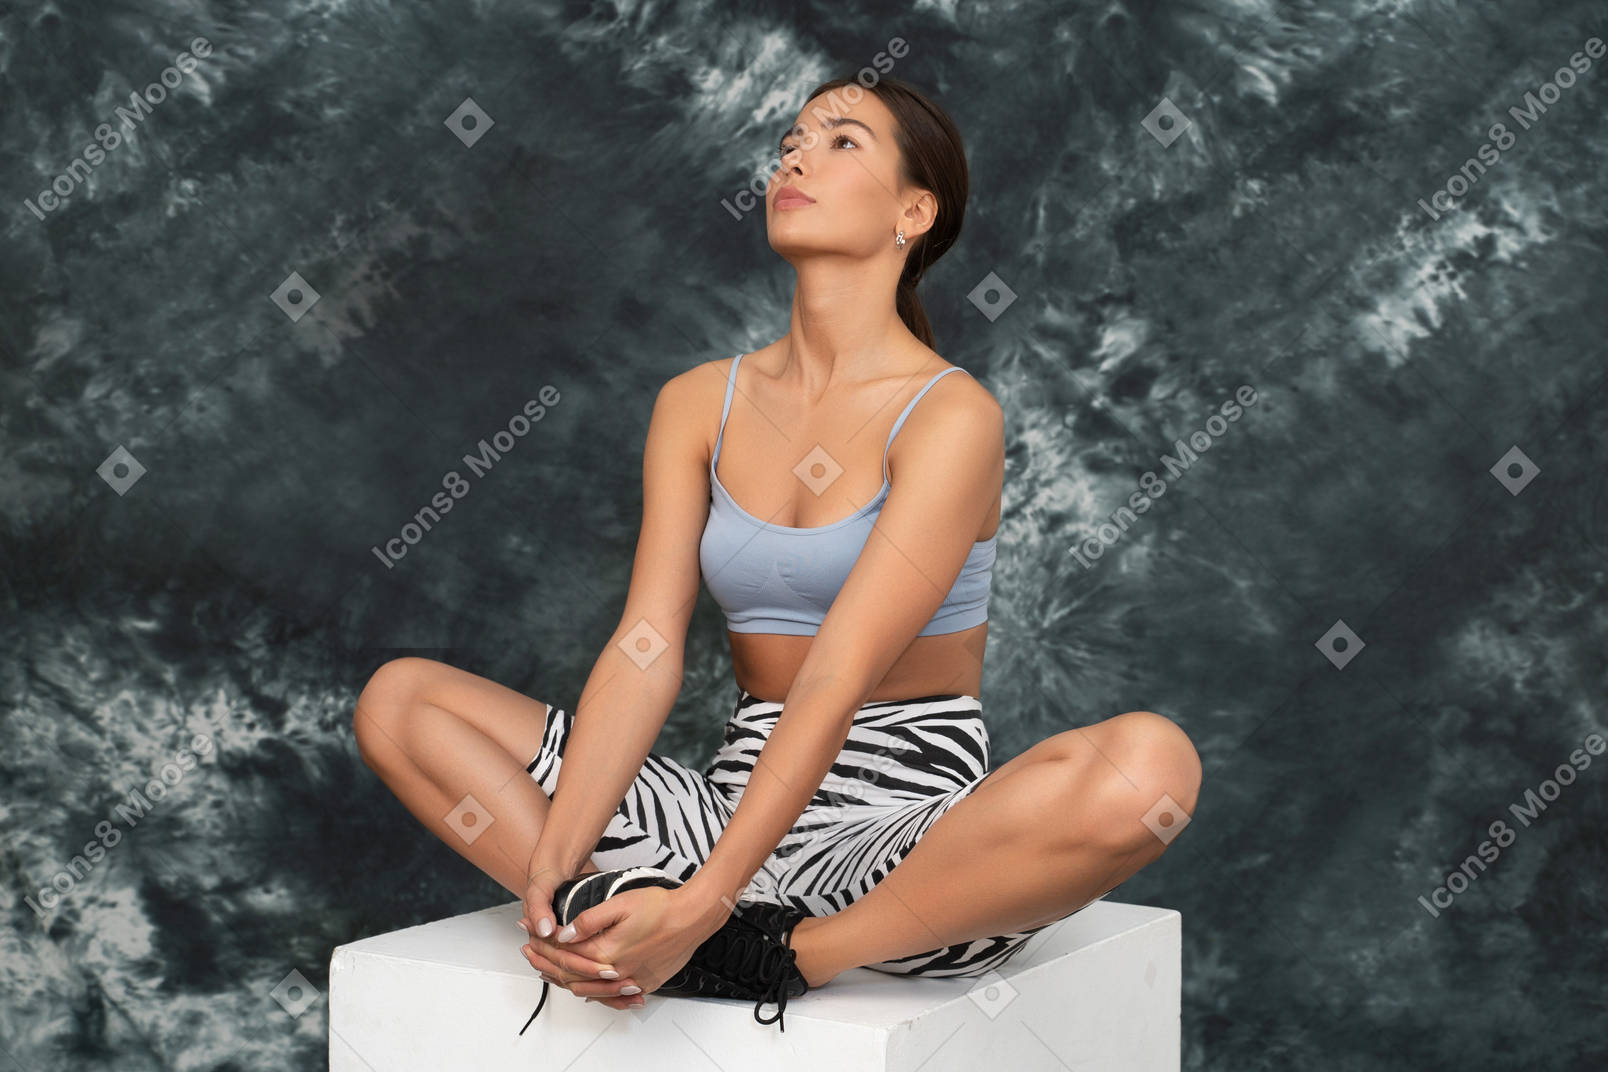 Atleta femenina mirando hacia arriba y sentada en una pose de loto